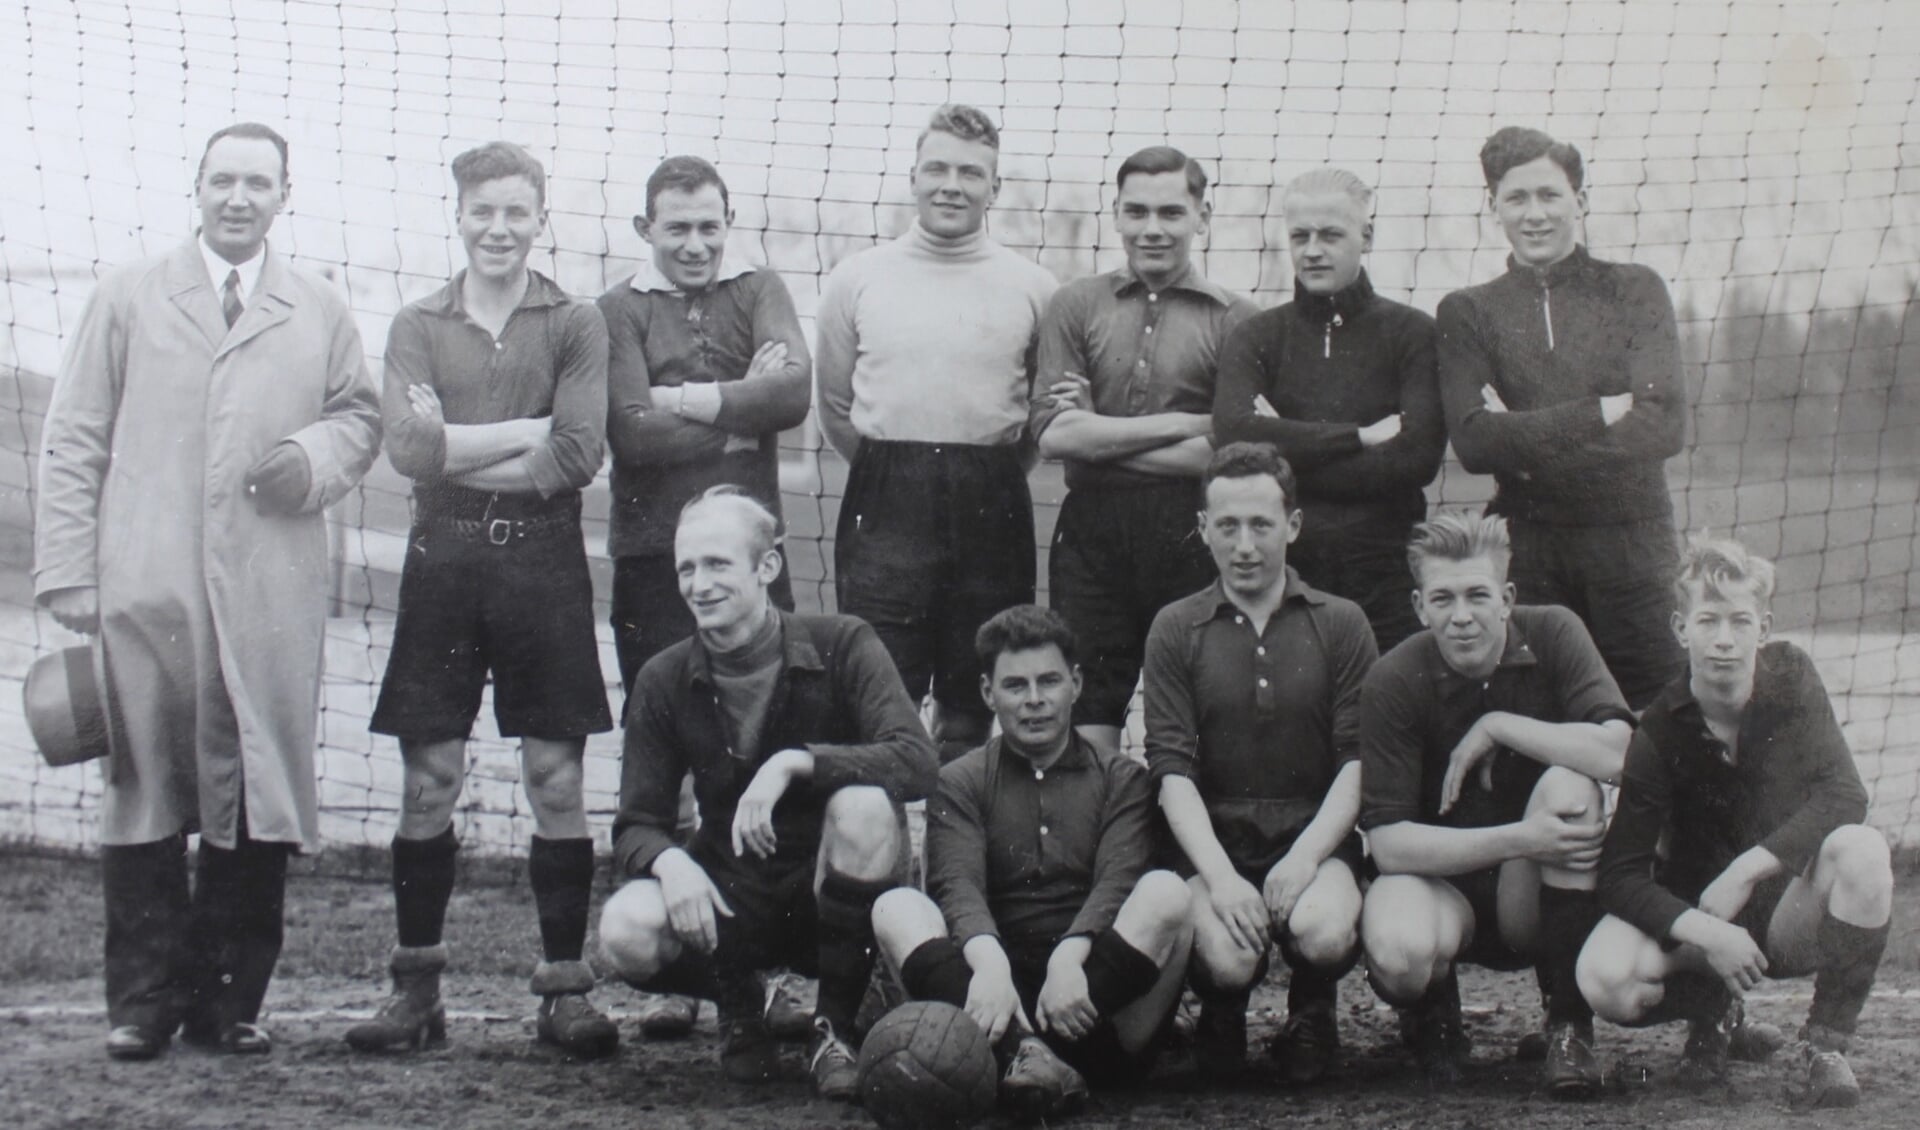 Emanuel Klasser (staand derde van links) en Arnoldus van Daal (keeper met coltrui) op een elftalfoto van het tweede elftal uit 1935. Beide Quickers overleven de oorlog niet. Vijf andere trouwe Quick-spelers evenmin.